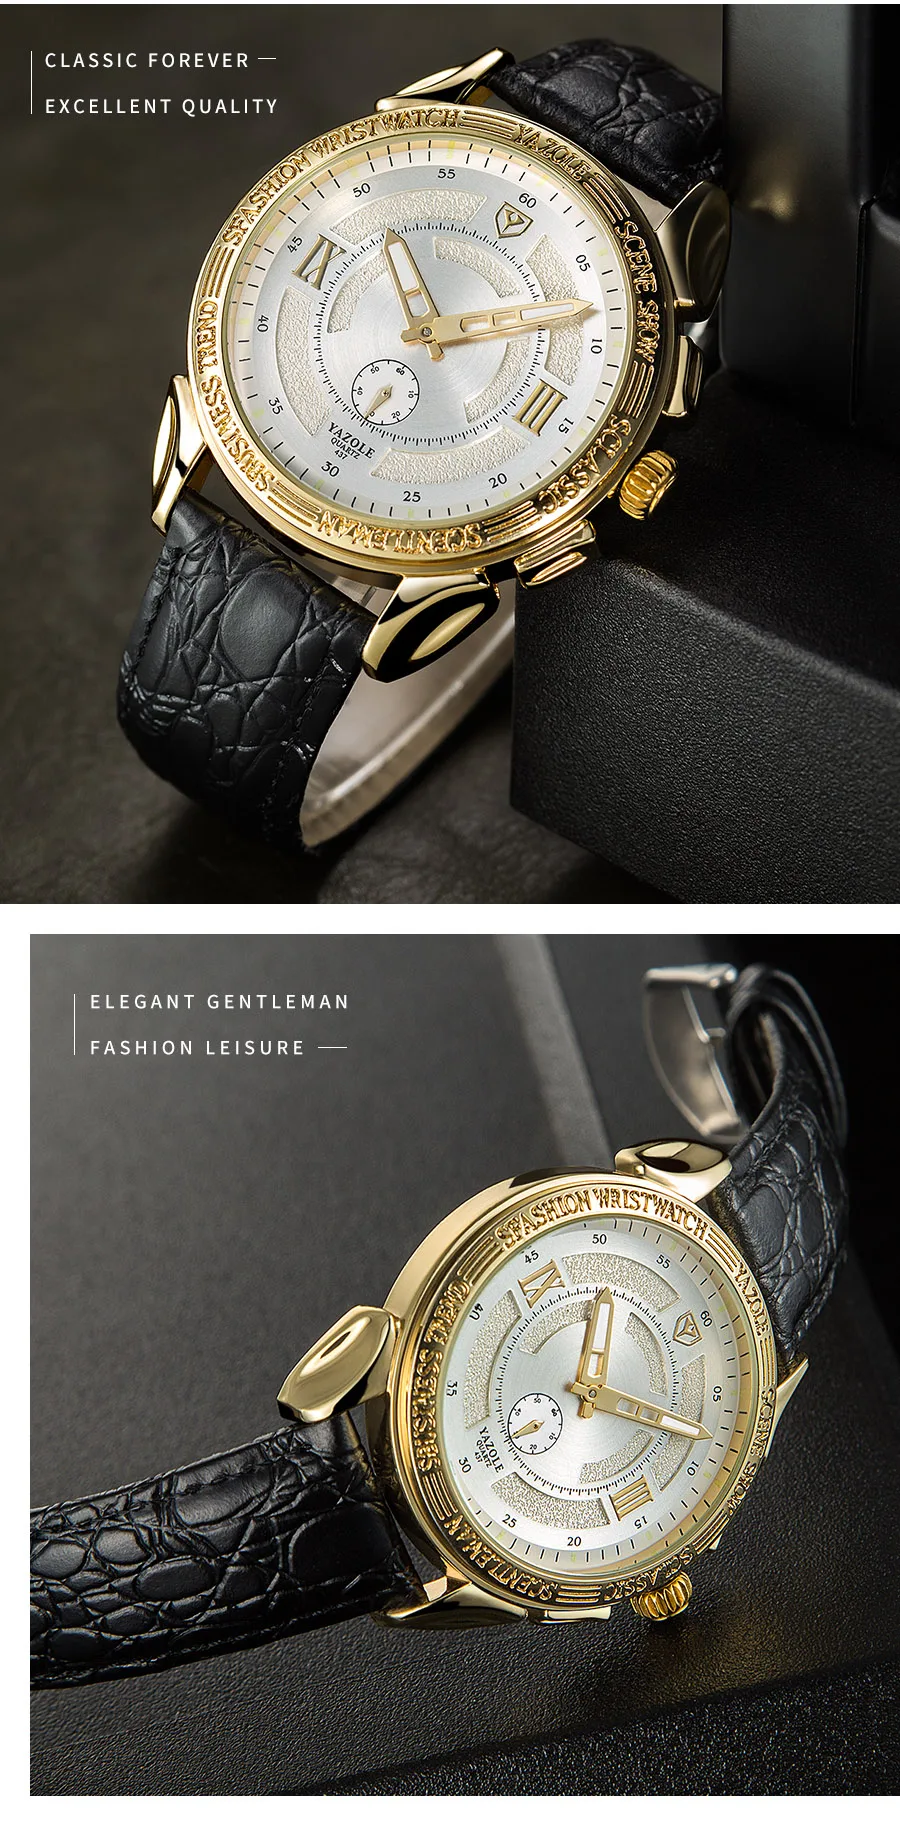 Мужские часы Топ бренд класса люкс YAZOLE Мужские часы 3ATM водонепроницаемые мужские часы светящиеся указатели дизайнерские модные деловые часы